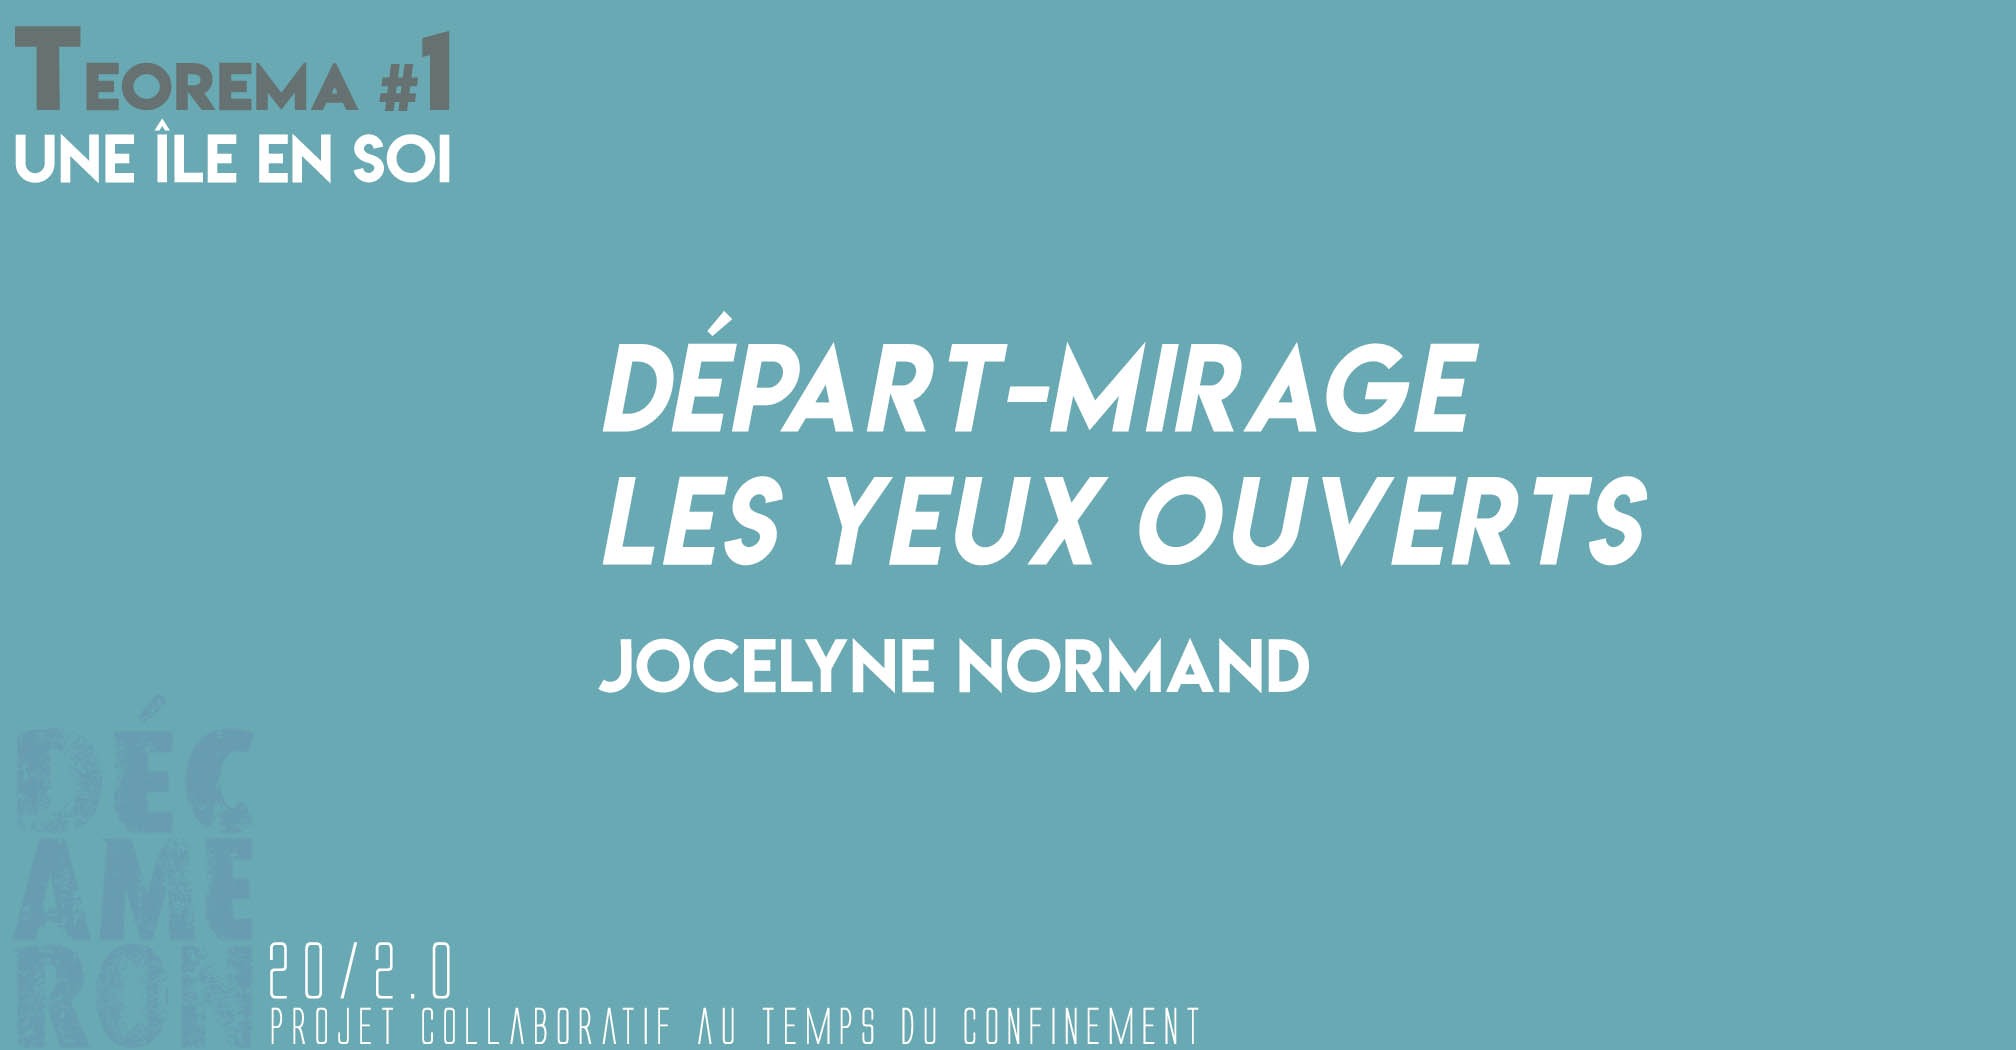 Départ-mirage les yeux ouverts - Jocelyne Normand (Teorema #1)